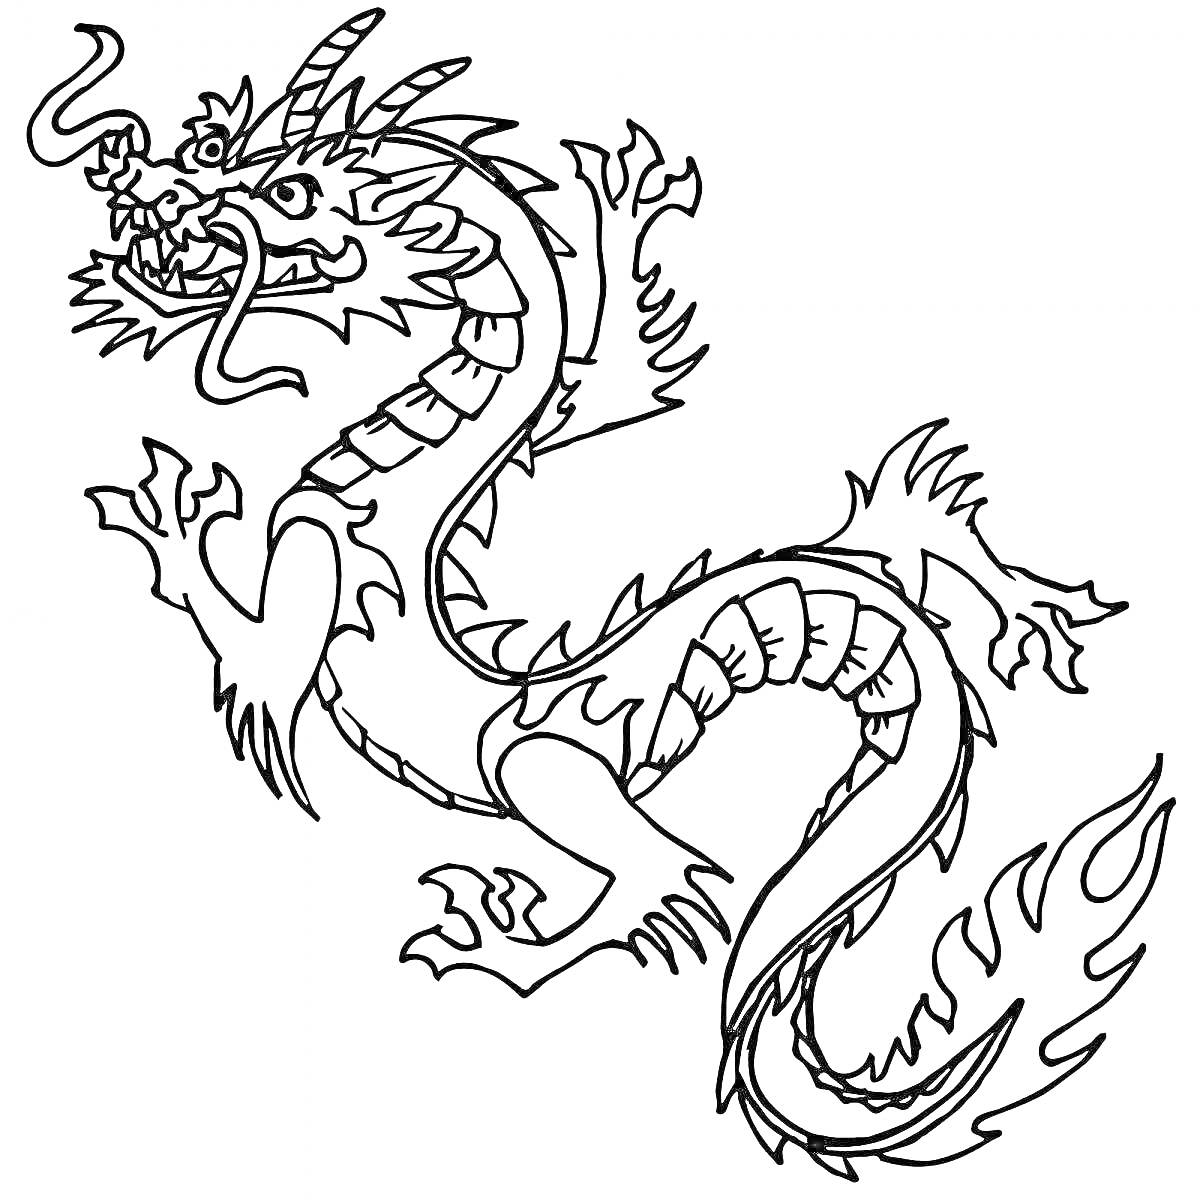 Раскраска Китайский дракон с усами, рогами и когтями, изображённый в горизонтальном положении с изогнутым телом и длинным хвостом, украшенным хвостовыми перьями.